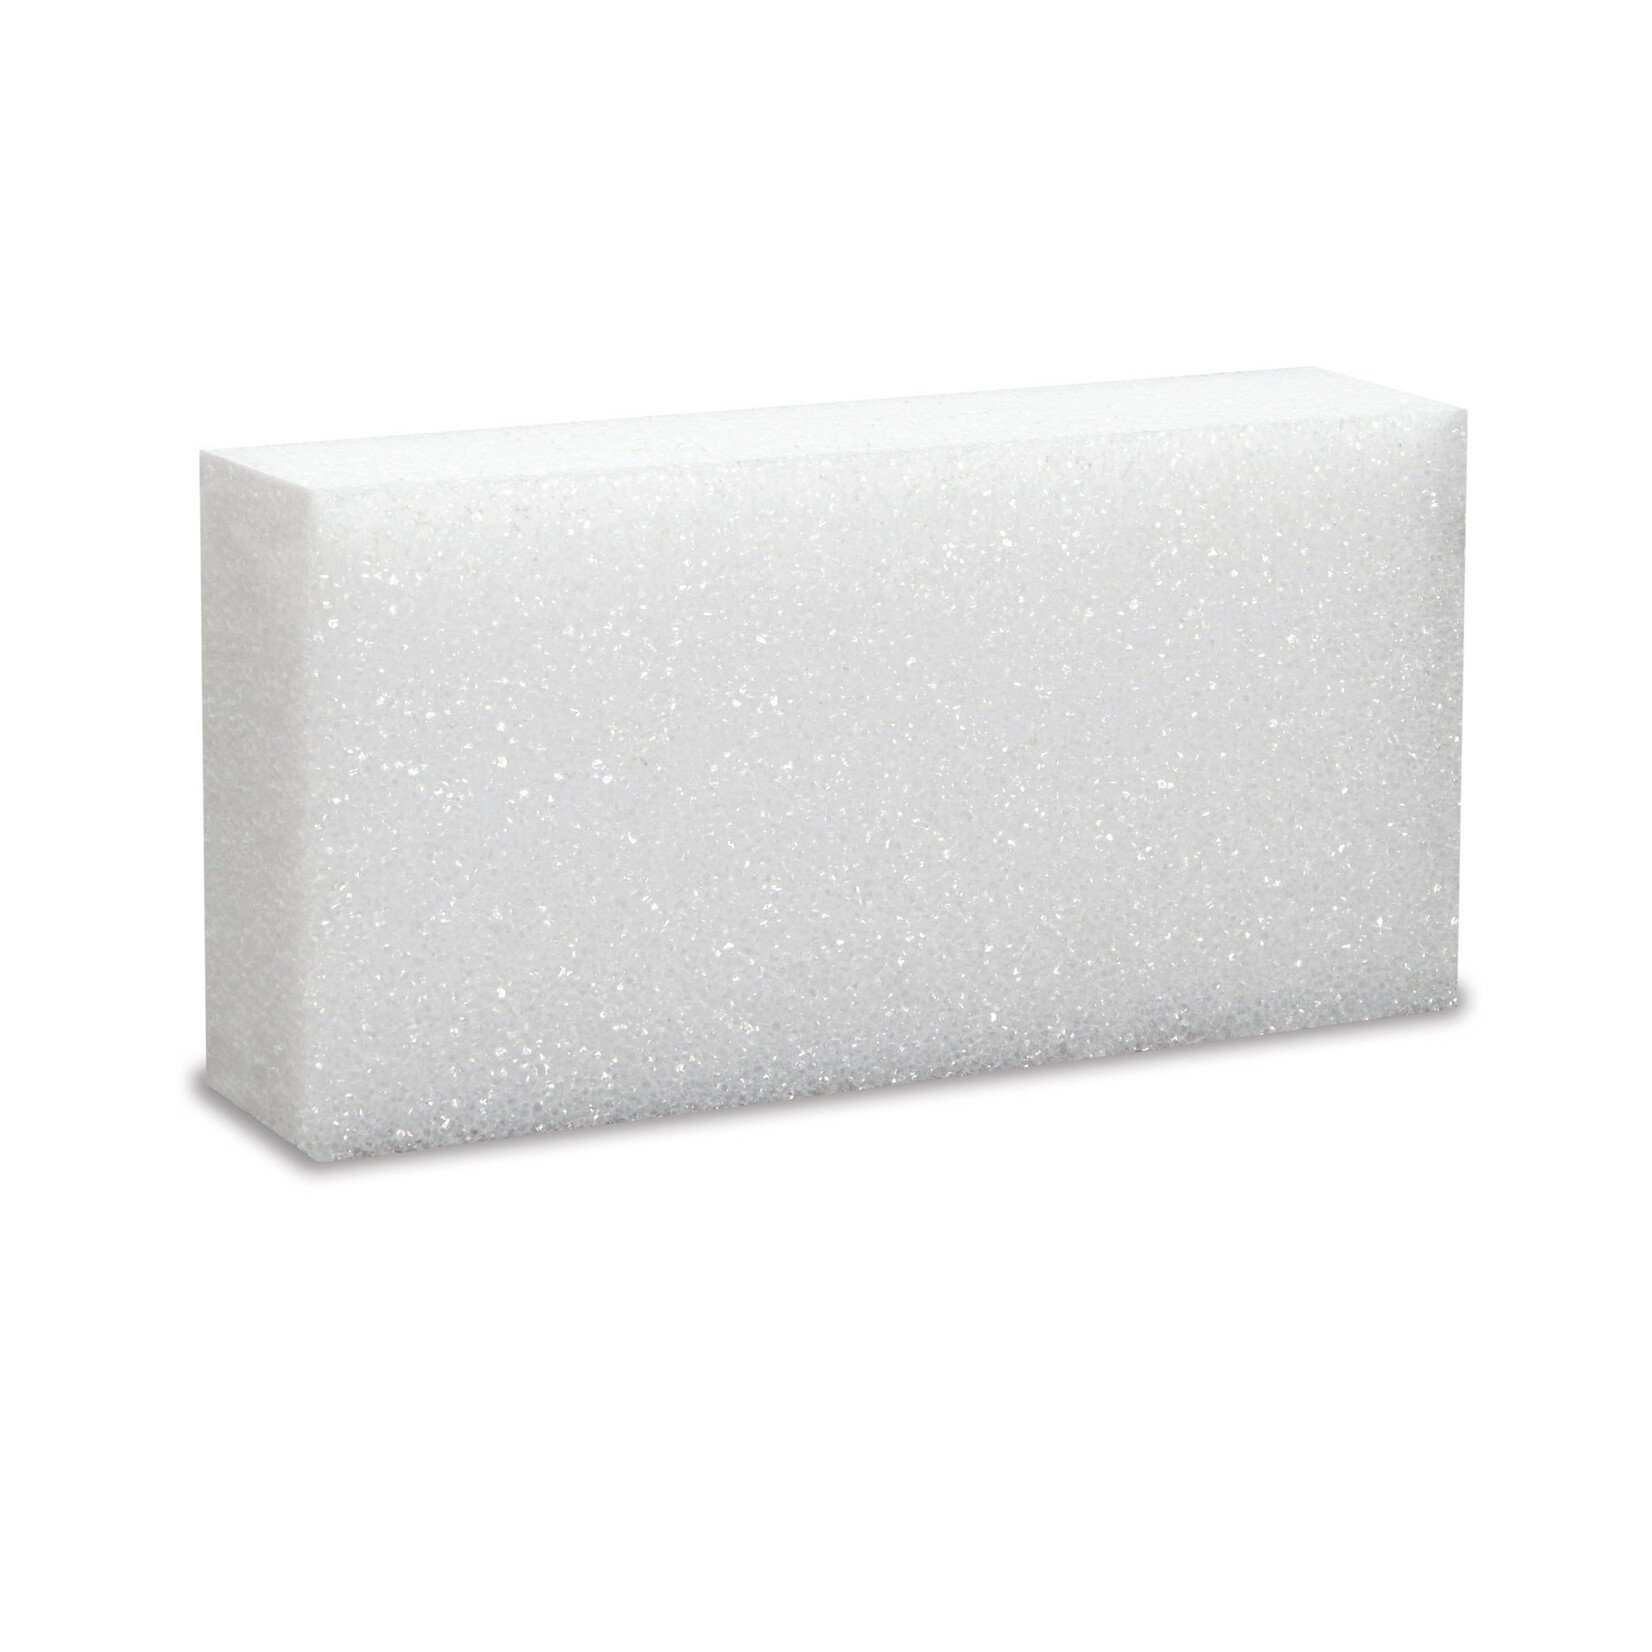 Floracraft Styrofoam Blocks, 8" x 4" x 2" White